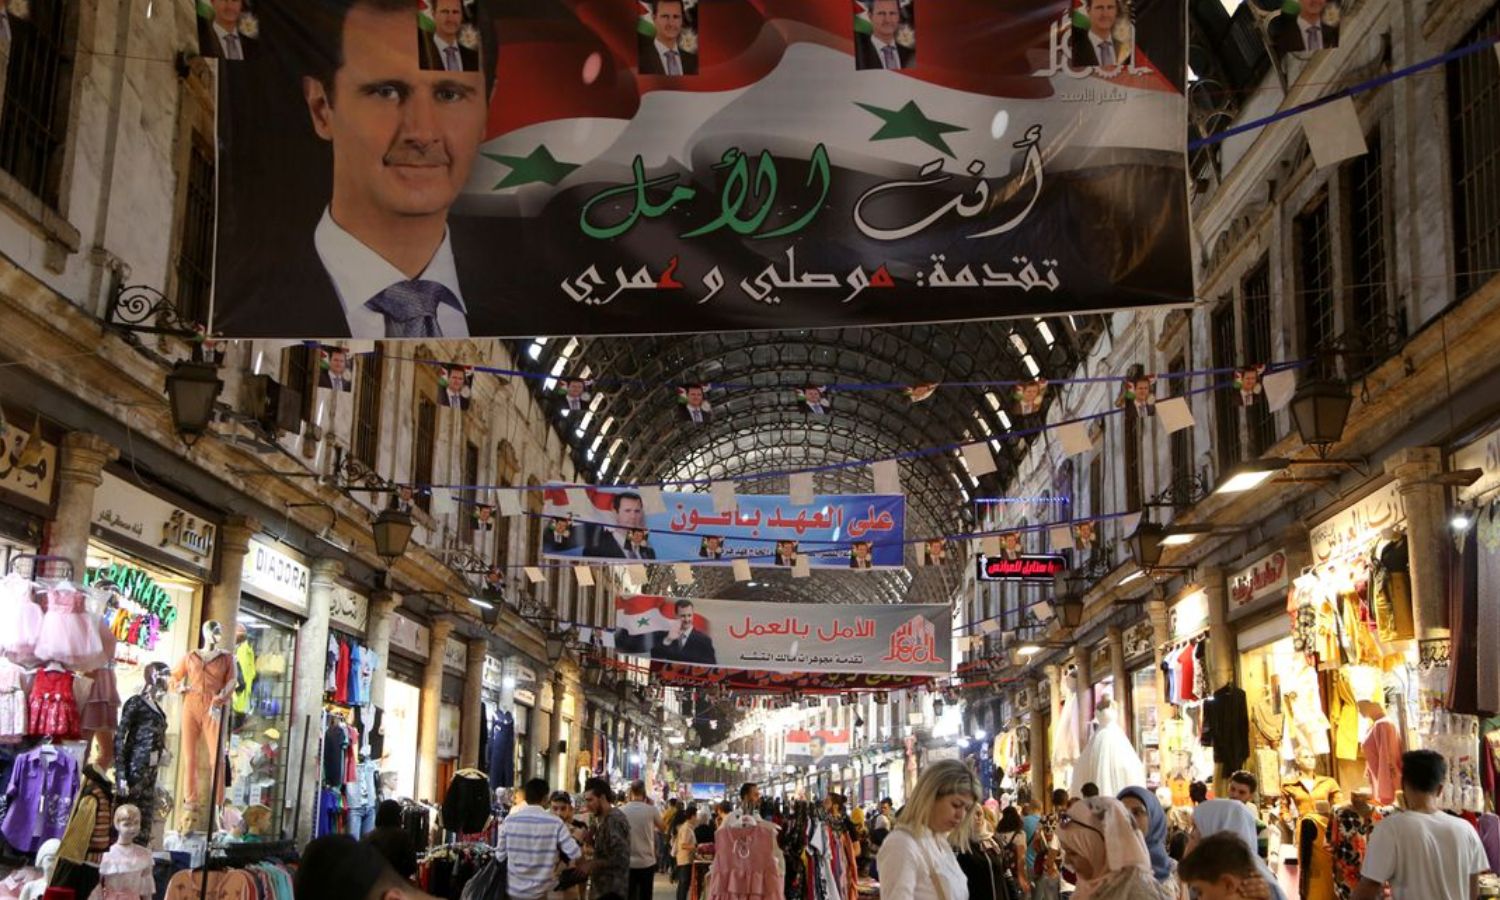 أشخاص يتجولون في سوق الحميدية في العاصمة دمشق وصور بشار الأسد تعلو الدكاكين_ 22 من أيار 2021 (رويترز)